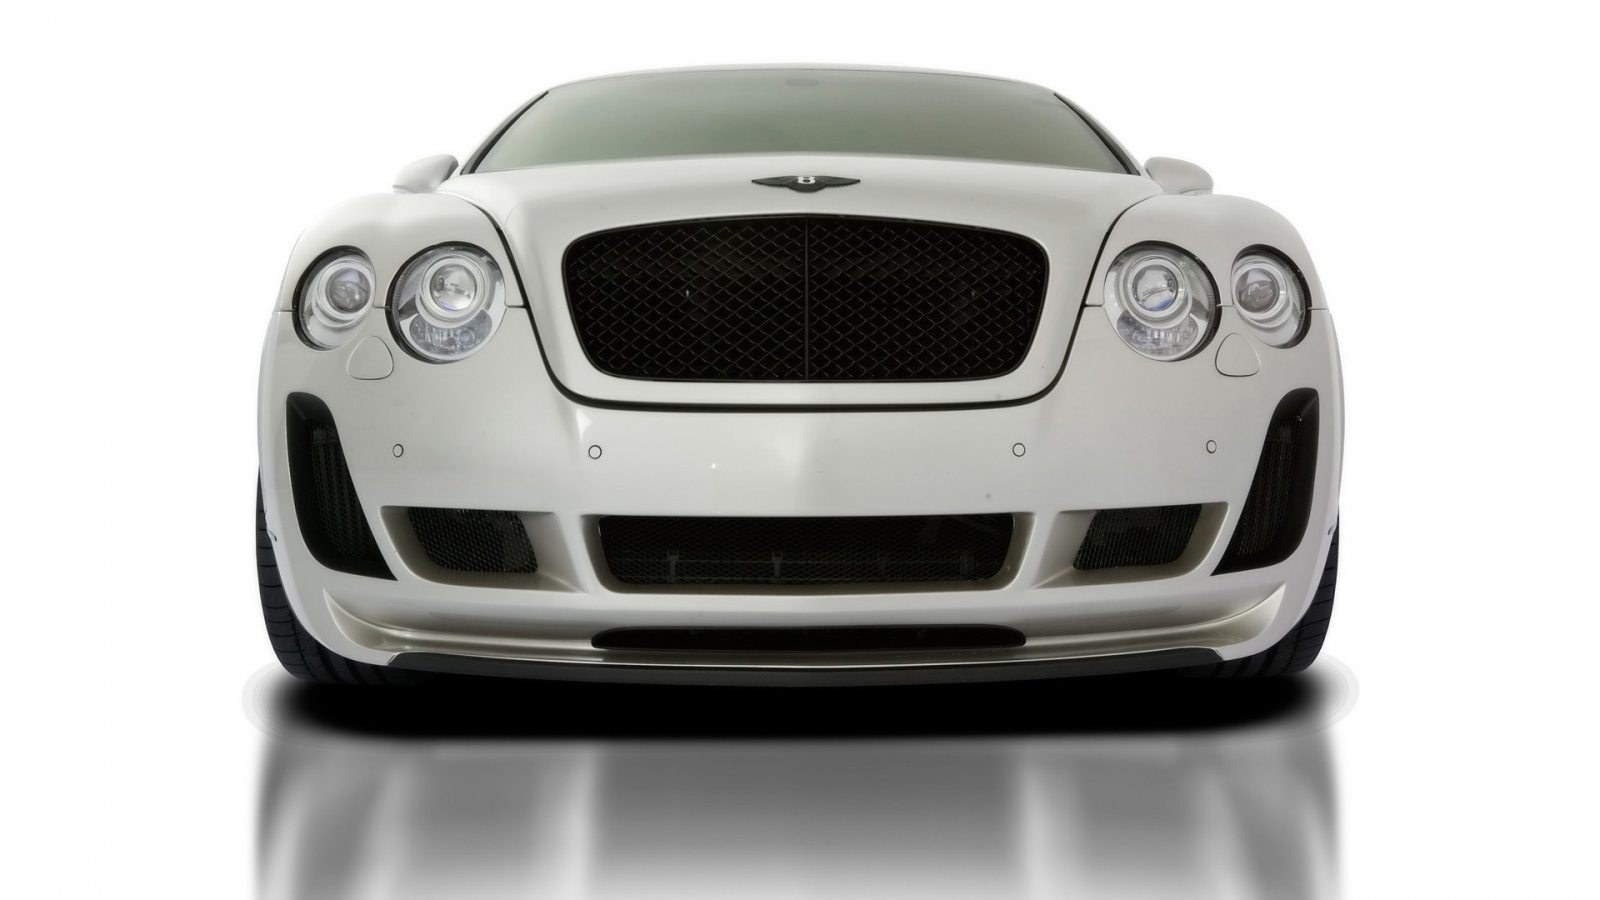 2010 Vorsteiner Bentley Continental GT BR9 Edition for 1600 x 900 HDTV resolution